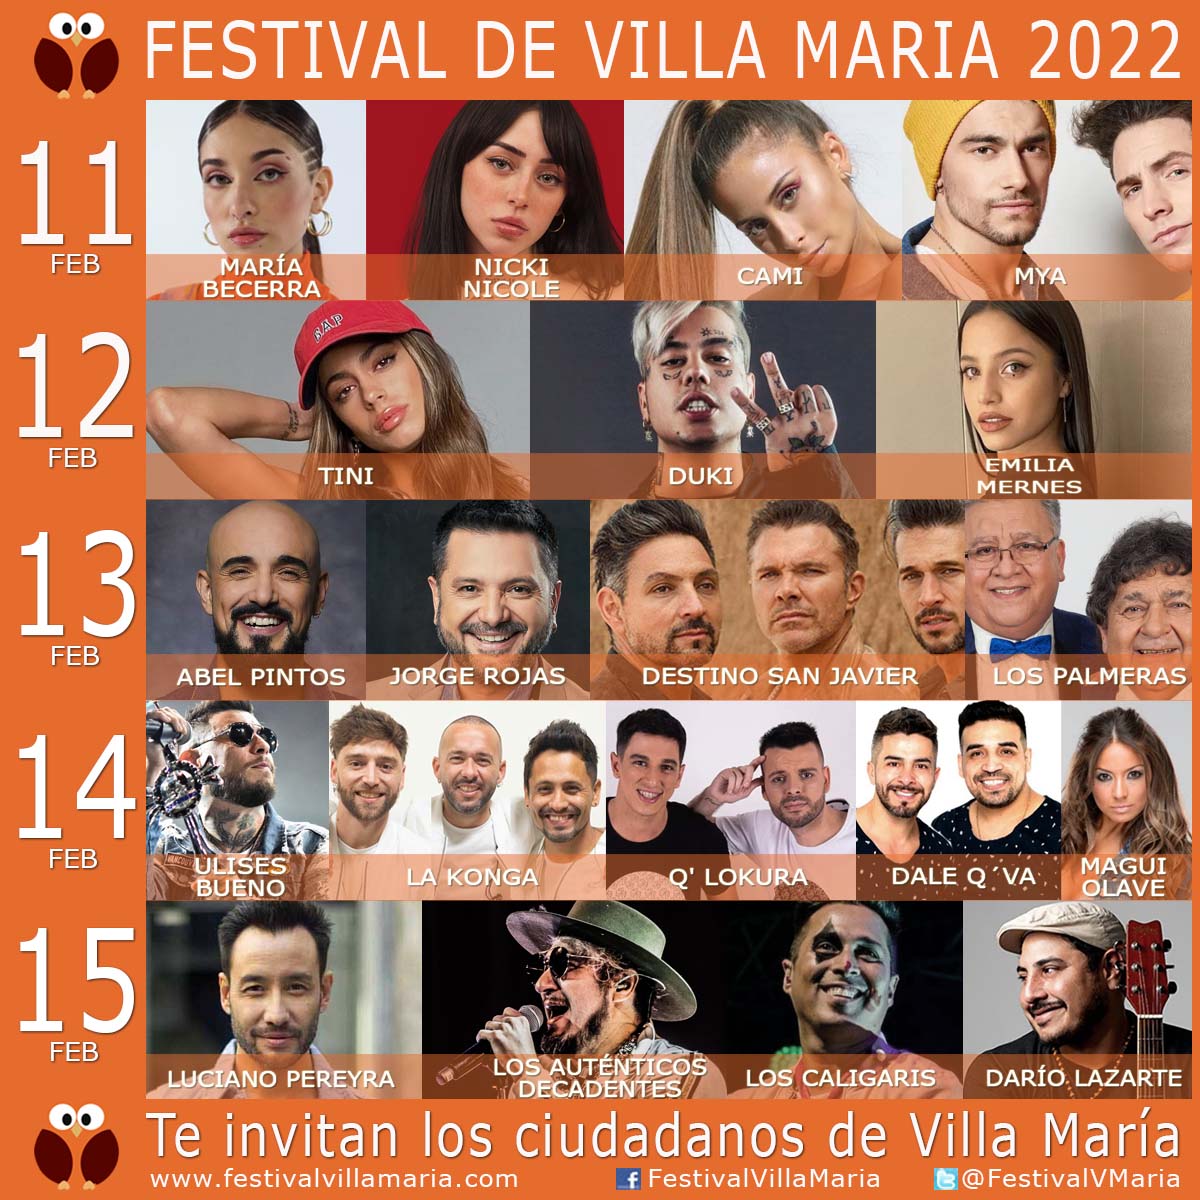 Cartelera Artistas Festival Villa Maria 2022